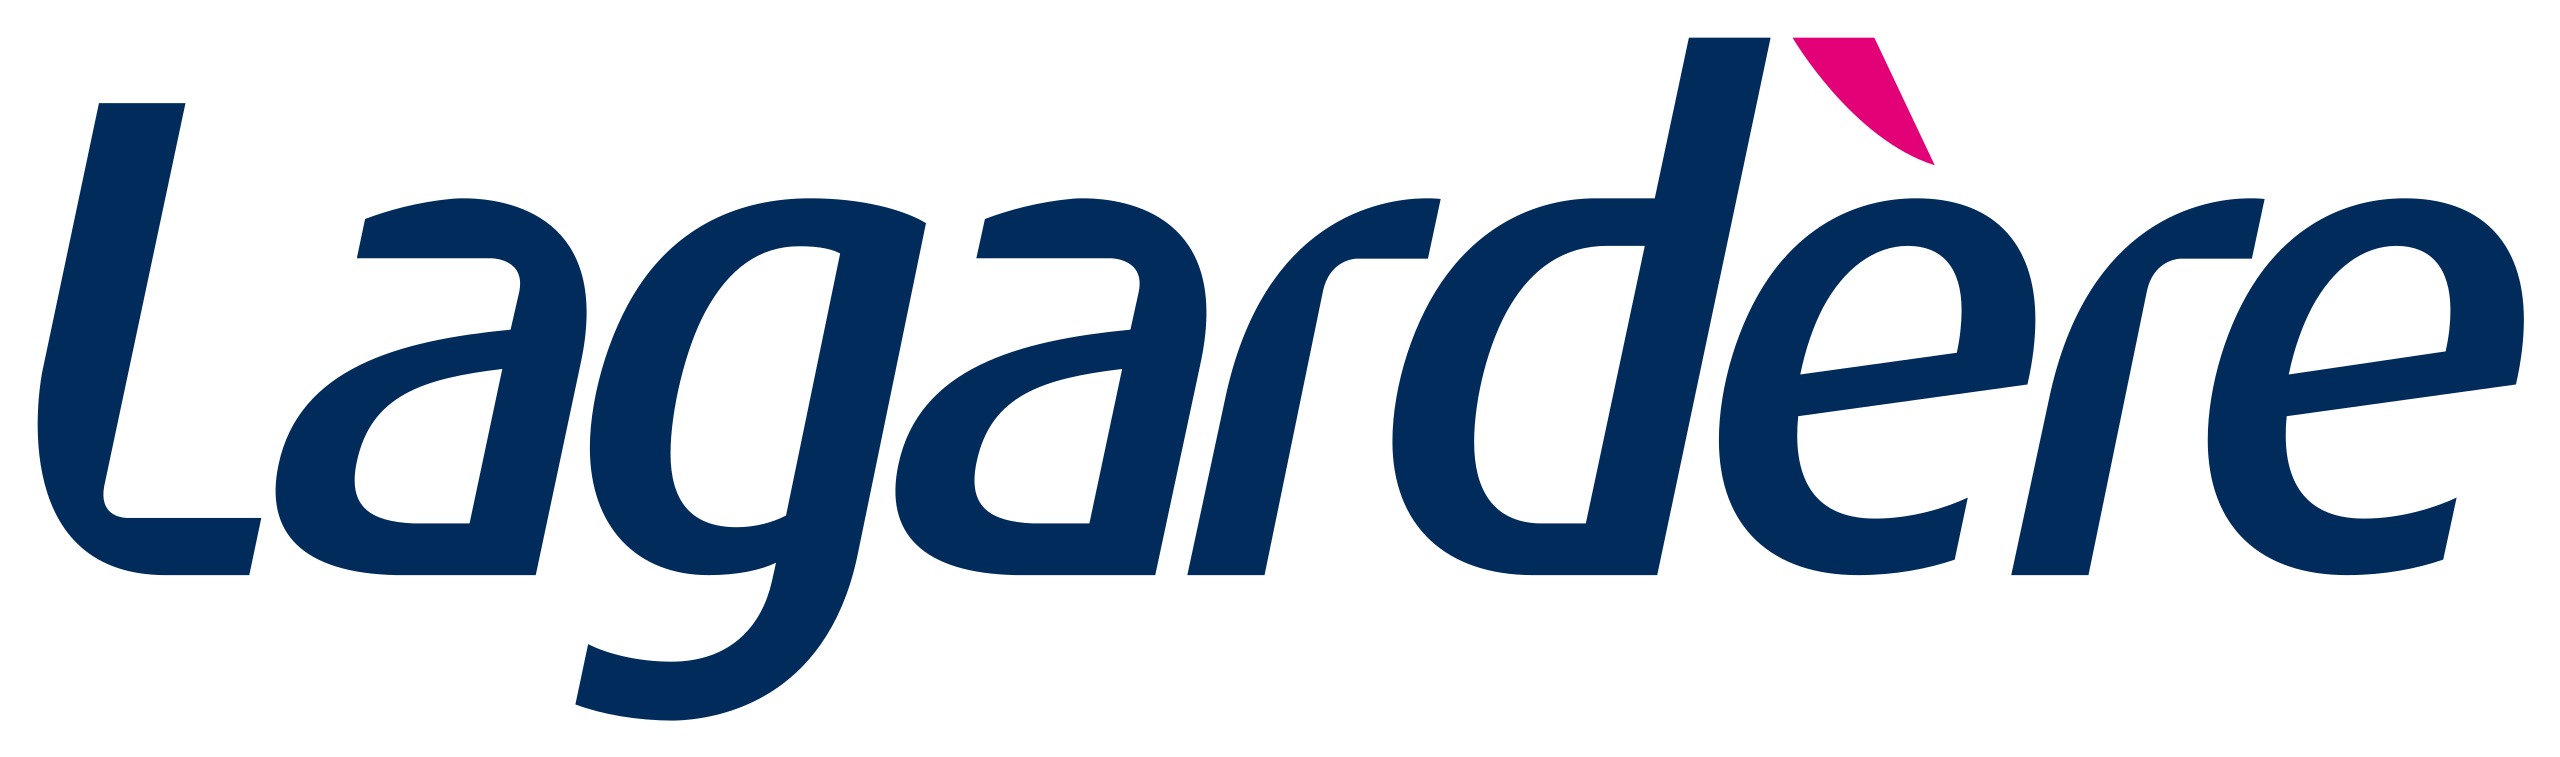 Lagardère Logo